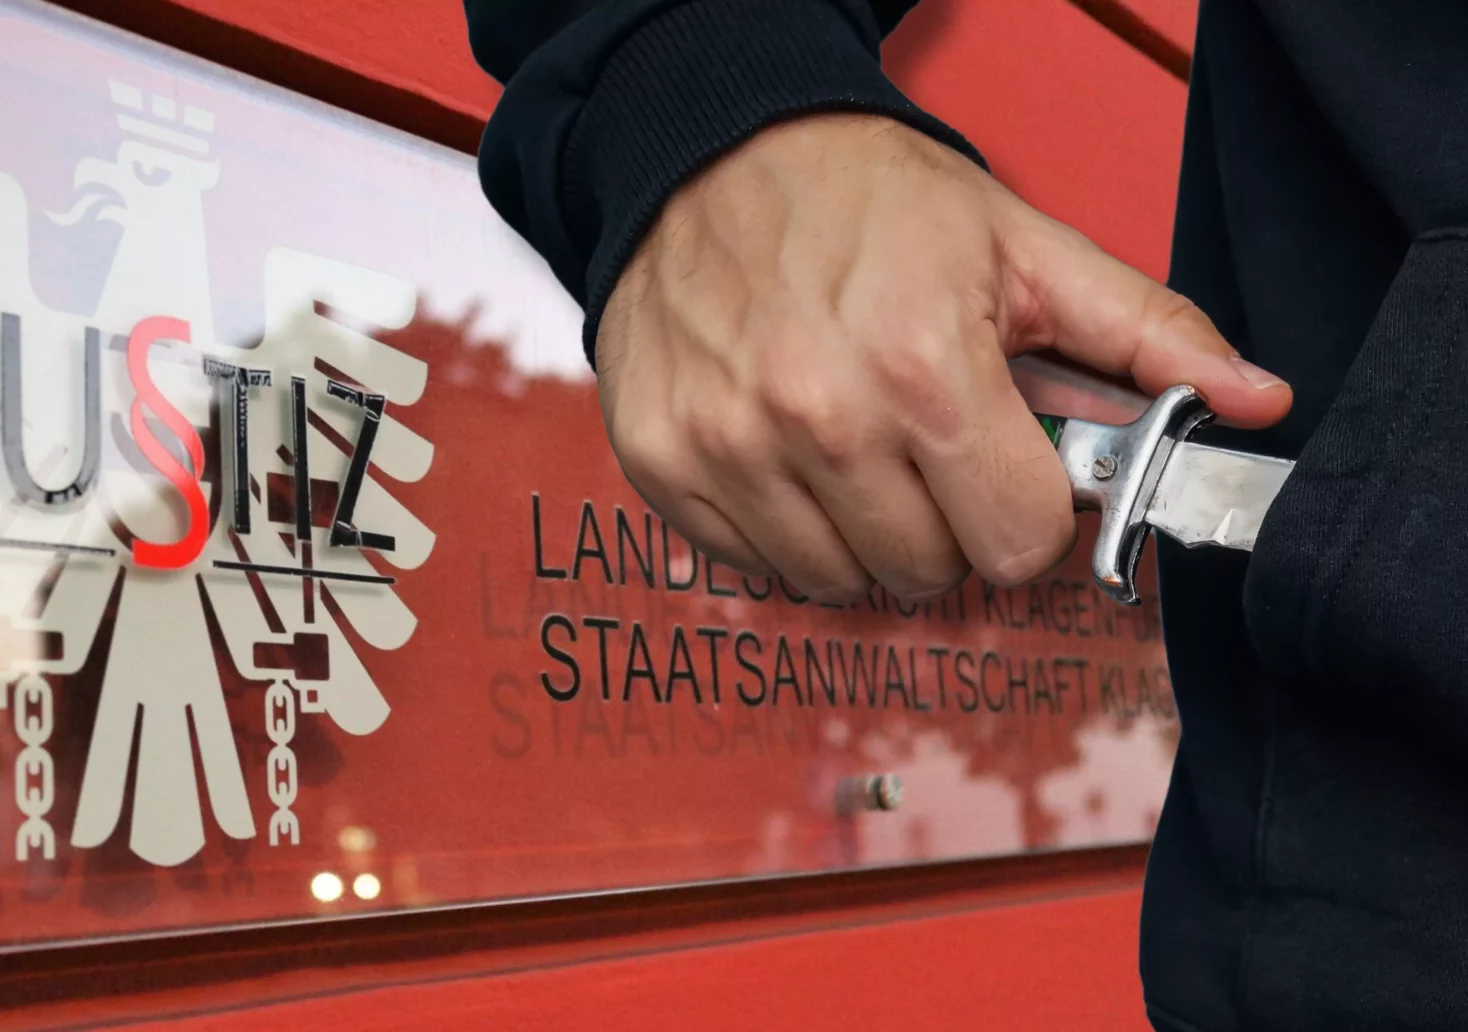 Eine Bildmontage auf 5min.at zeigt jemanden, der ein Messer zückt. Dahinter einen Gebäudeabschnitt des Landesgerichtes Klagenfurt.